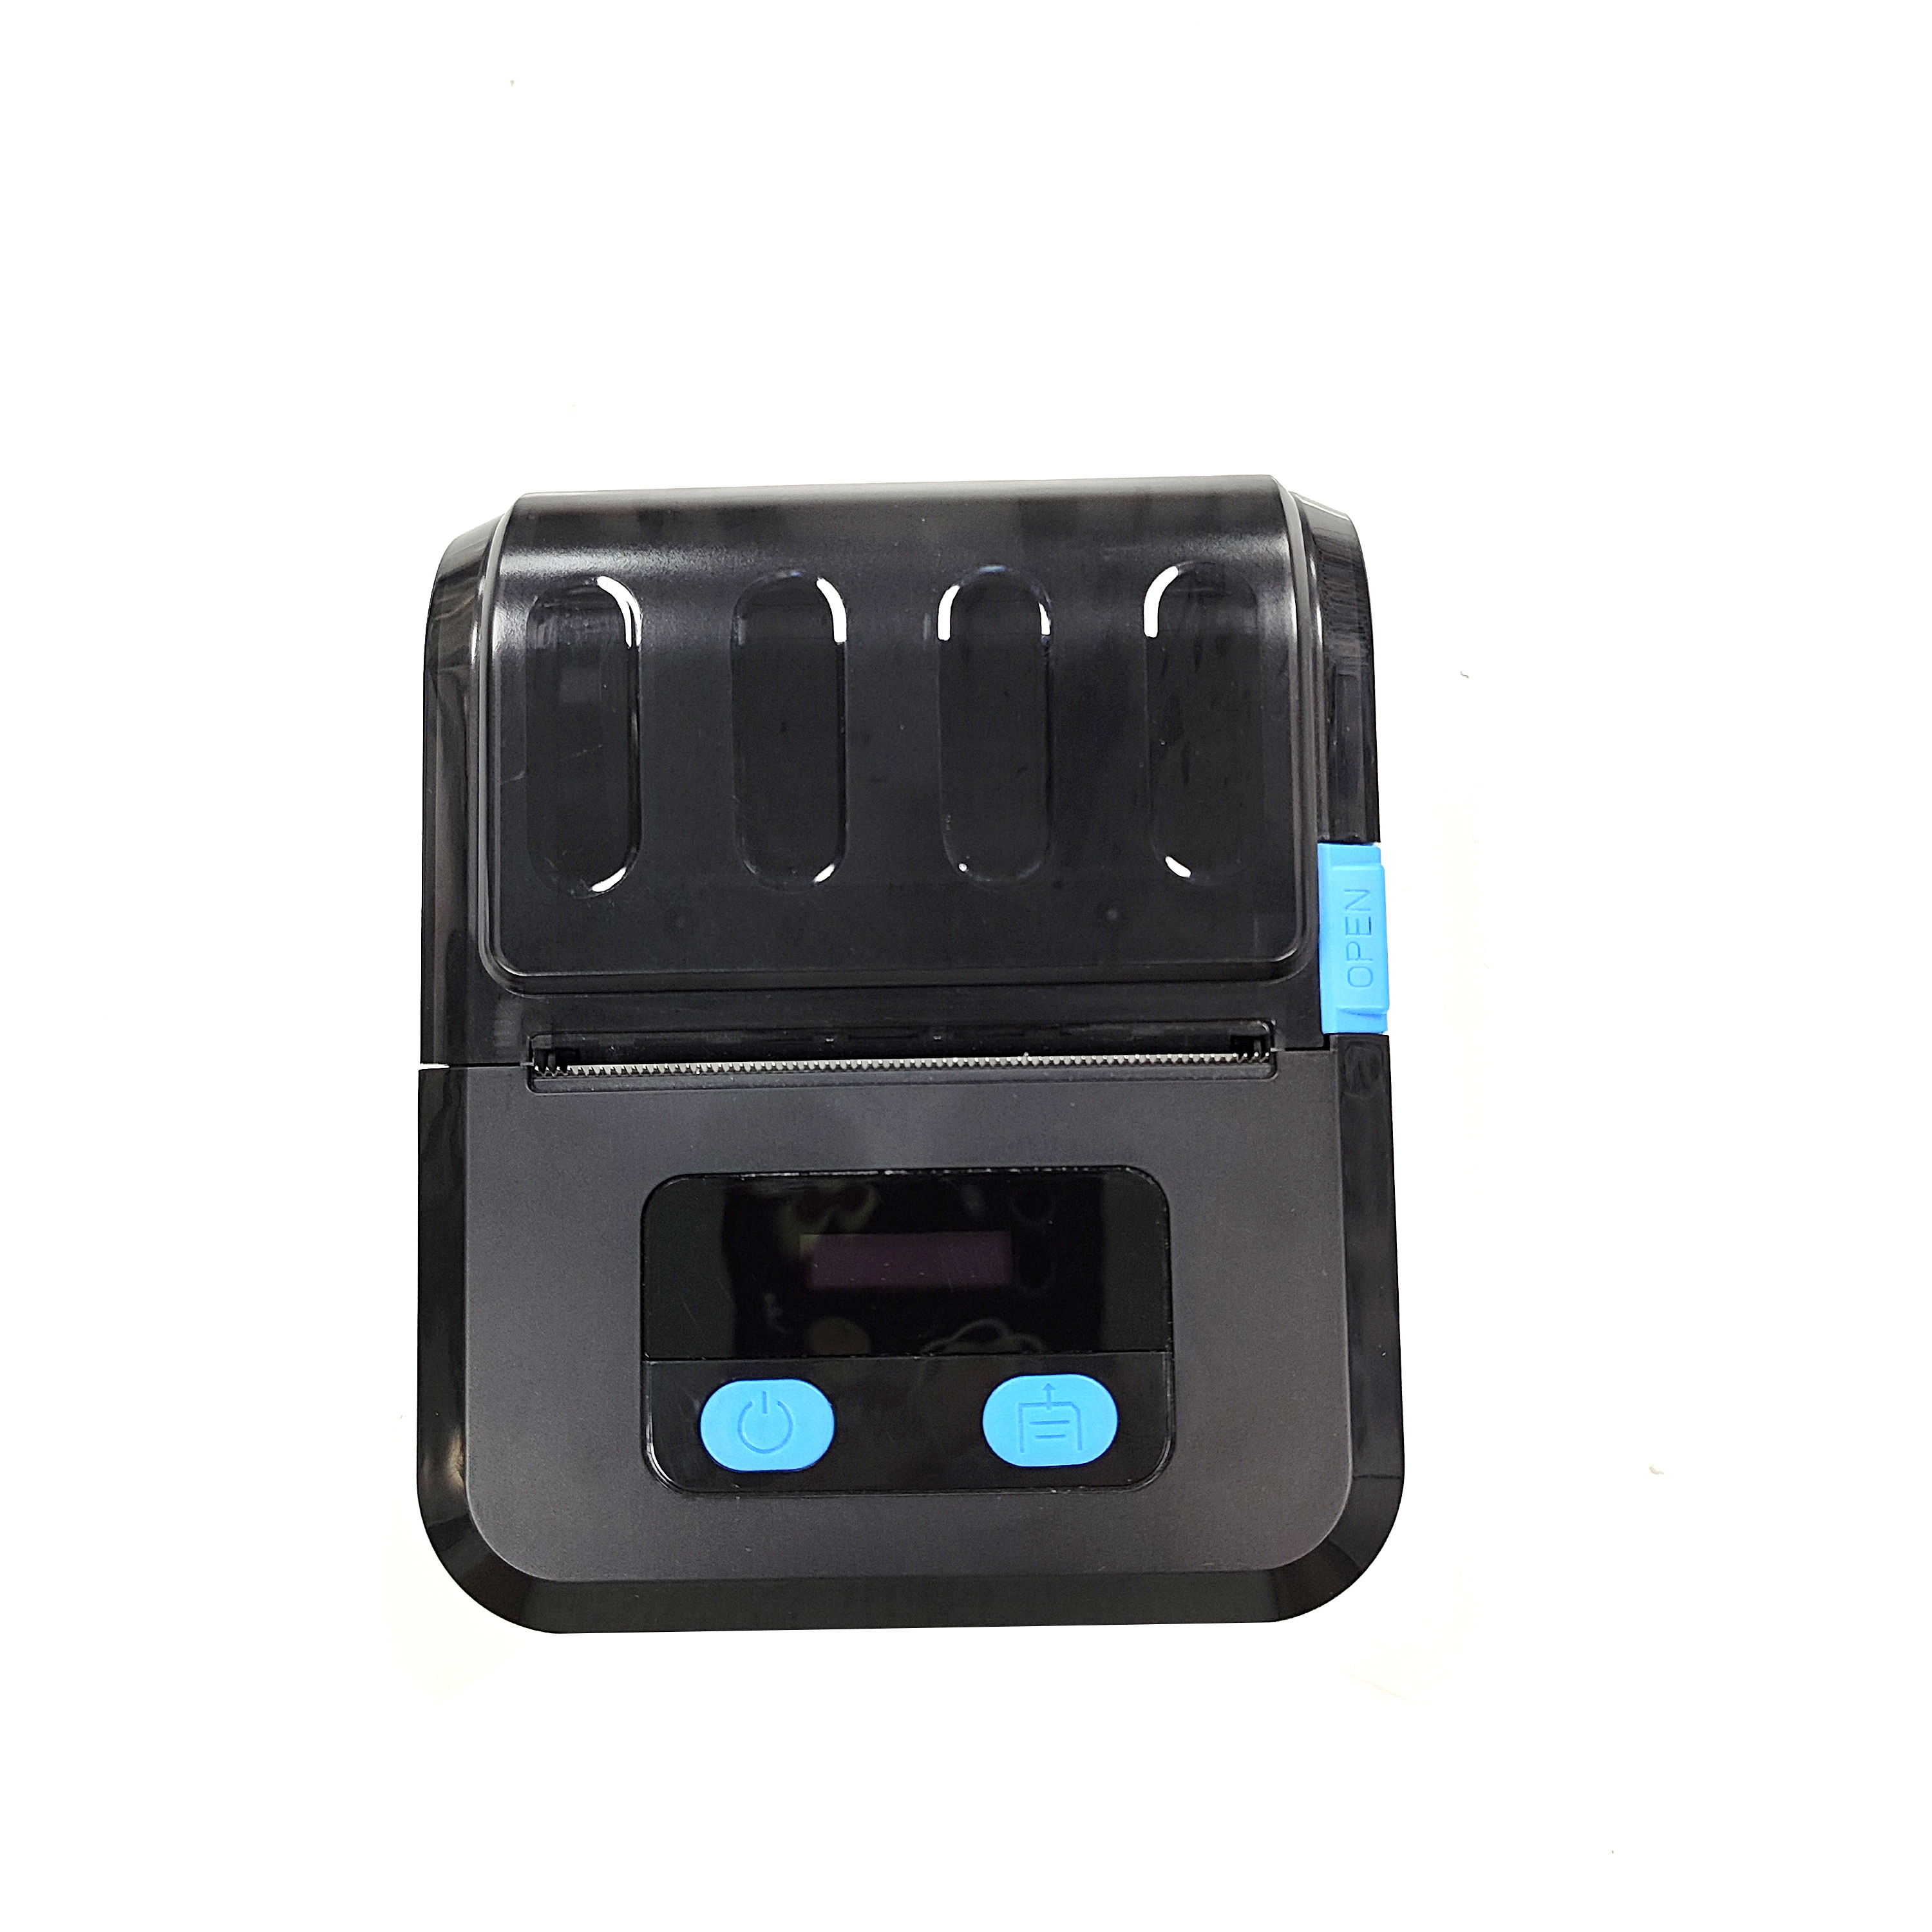 (OCBP-M89)черный бесплатный программный мини-принтер штрих-кода диаметром 50 мм с беспроводным Bluetooth и USB-принтером